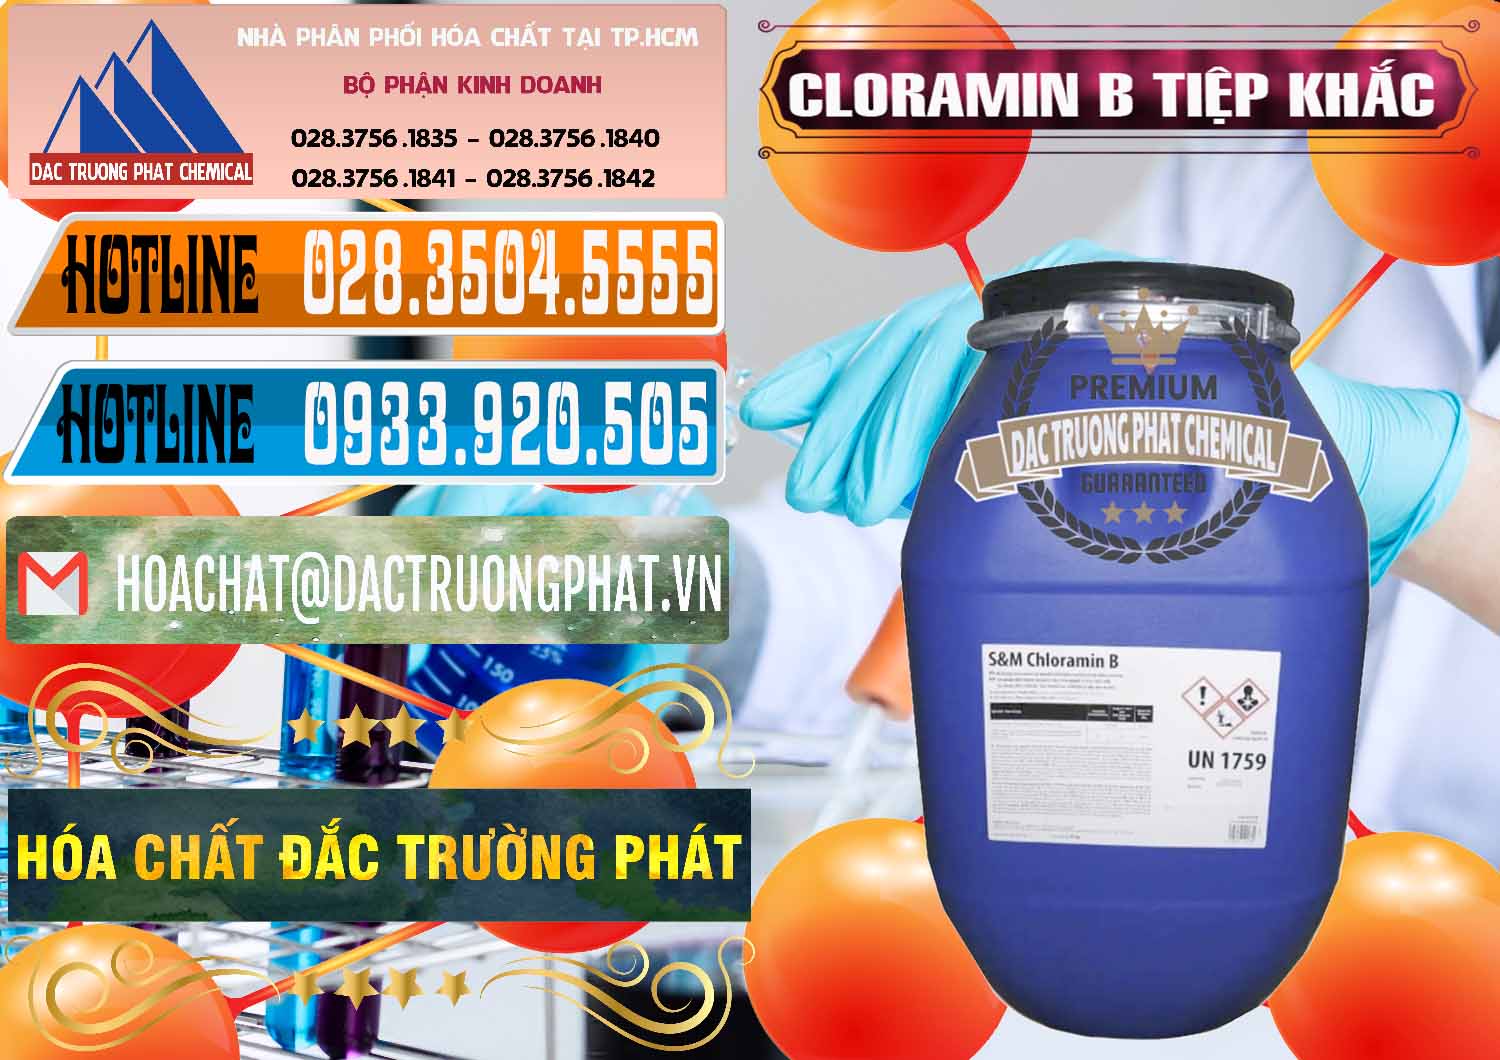 Cty kinh doanh và bán Cloramin B Cộng Hòa Séc Tiệp Khắc Czech Republic - 0299 - Công ty cung cấp - nhập khẩu hóa chất tại TP.HCM - stmp.net